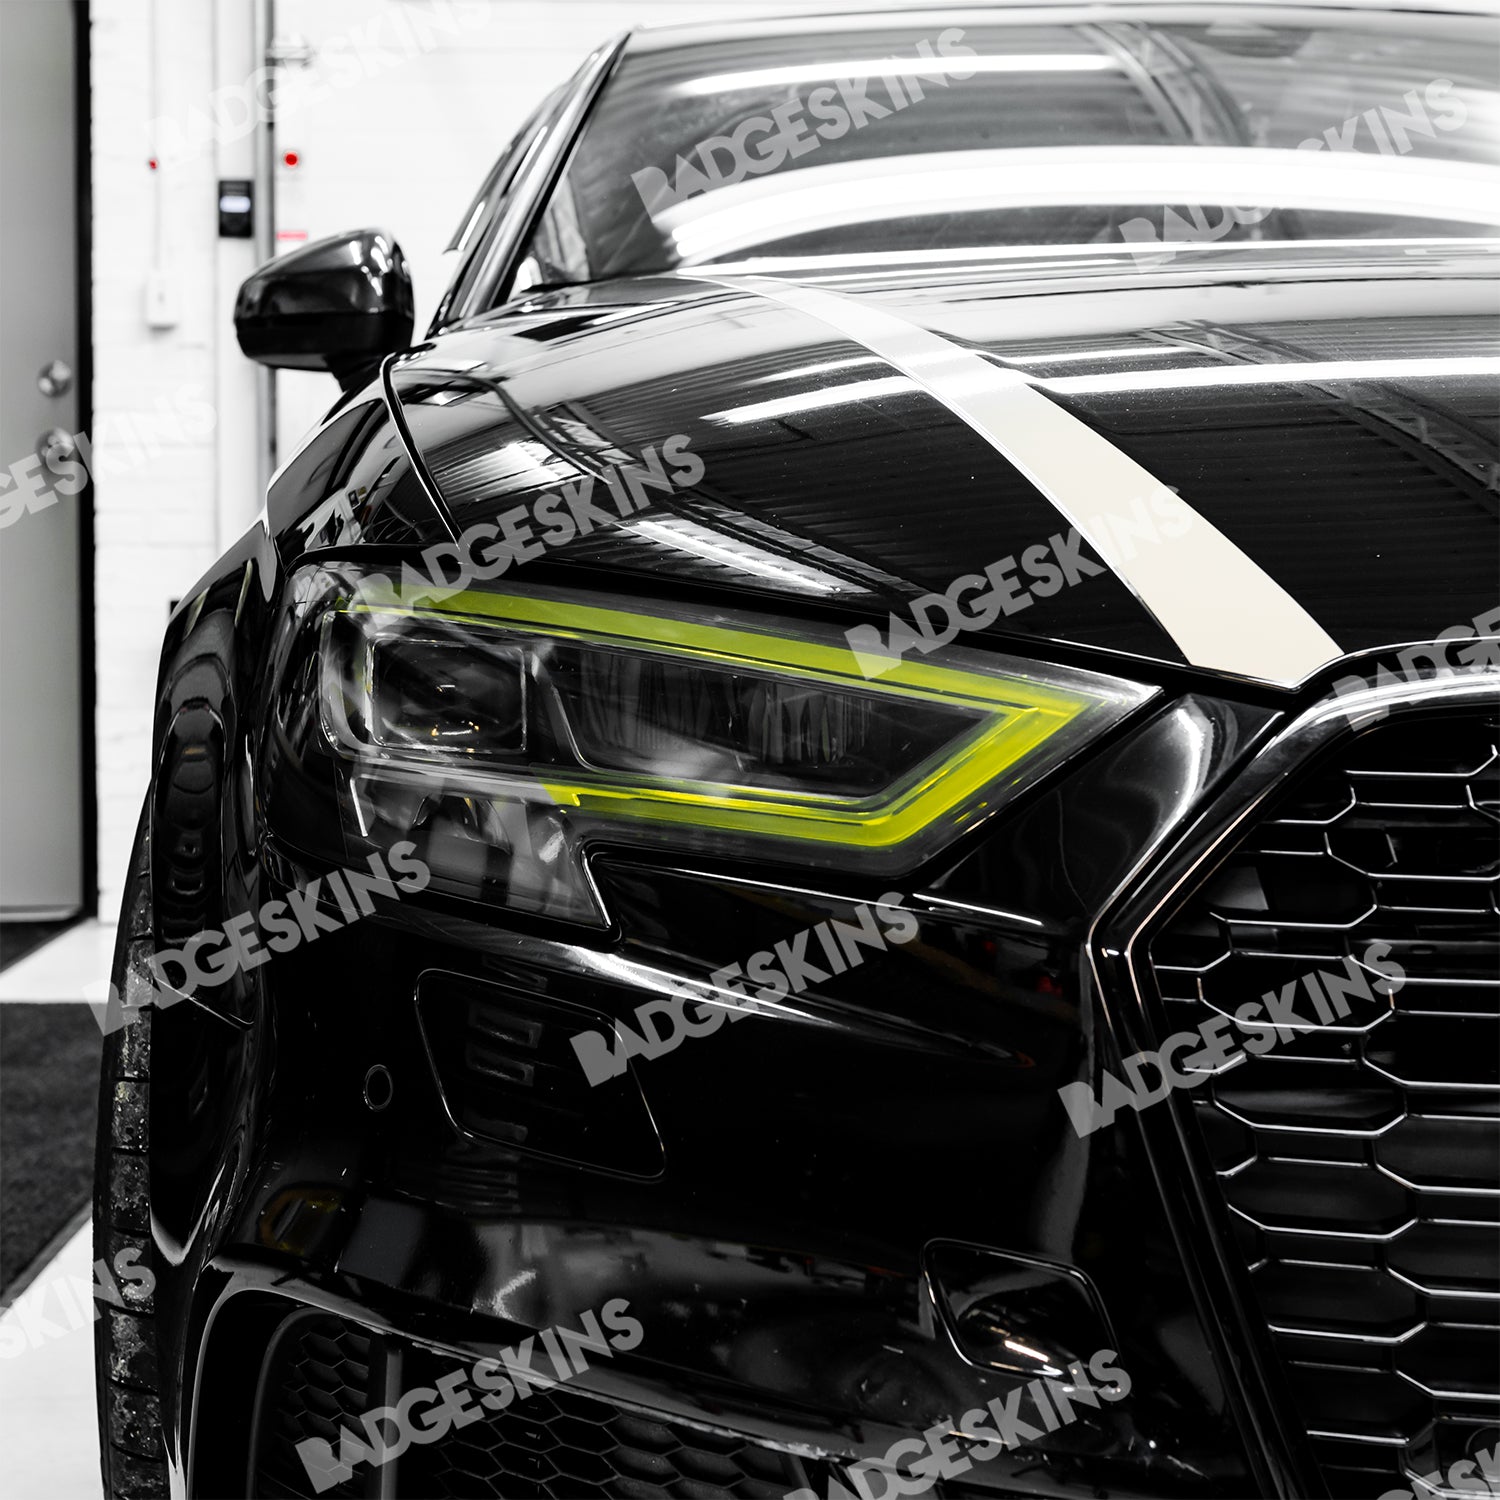 Audi - 8V - A3/S3/RS3 Platform - Head Light DRL Tint (2017-2020) –  Badgeskins